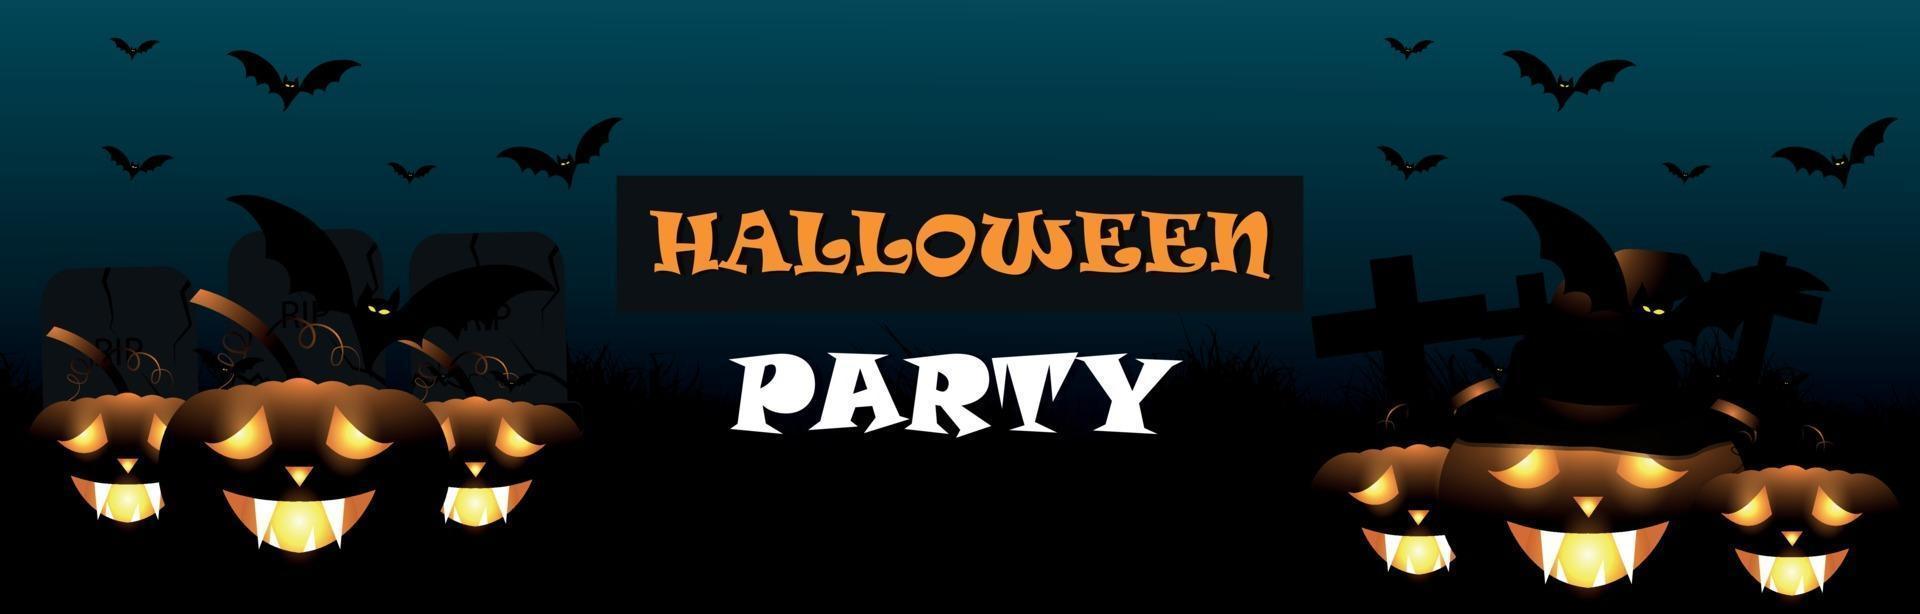 halloween-feestbanner met gloeiende pompoen, vliegende vleermuizen op horrorachtergrond vector